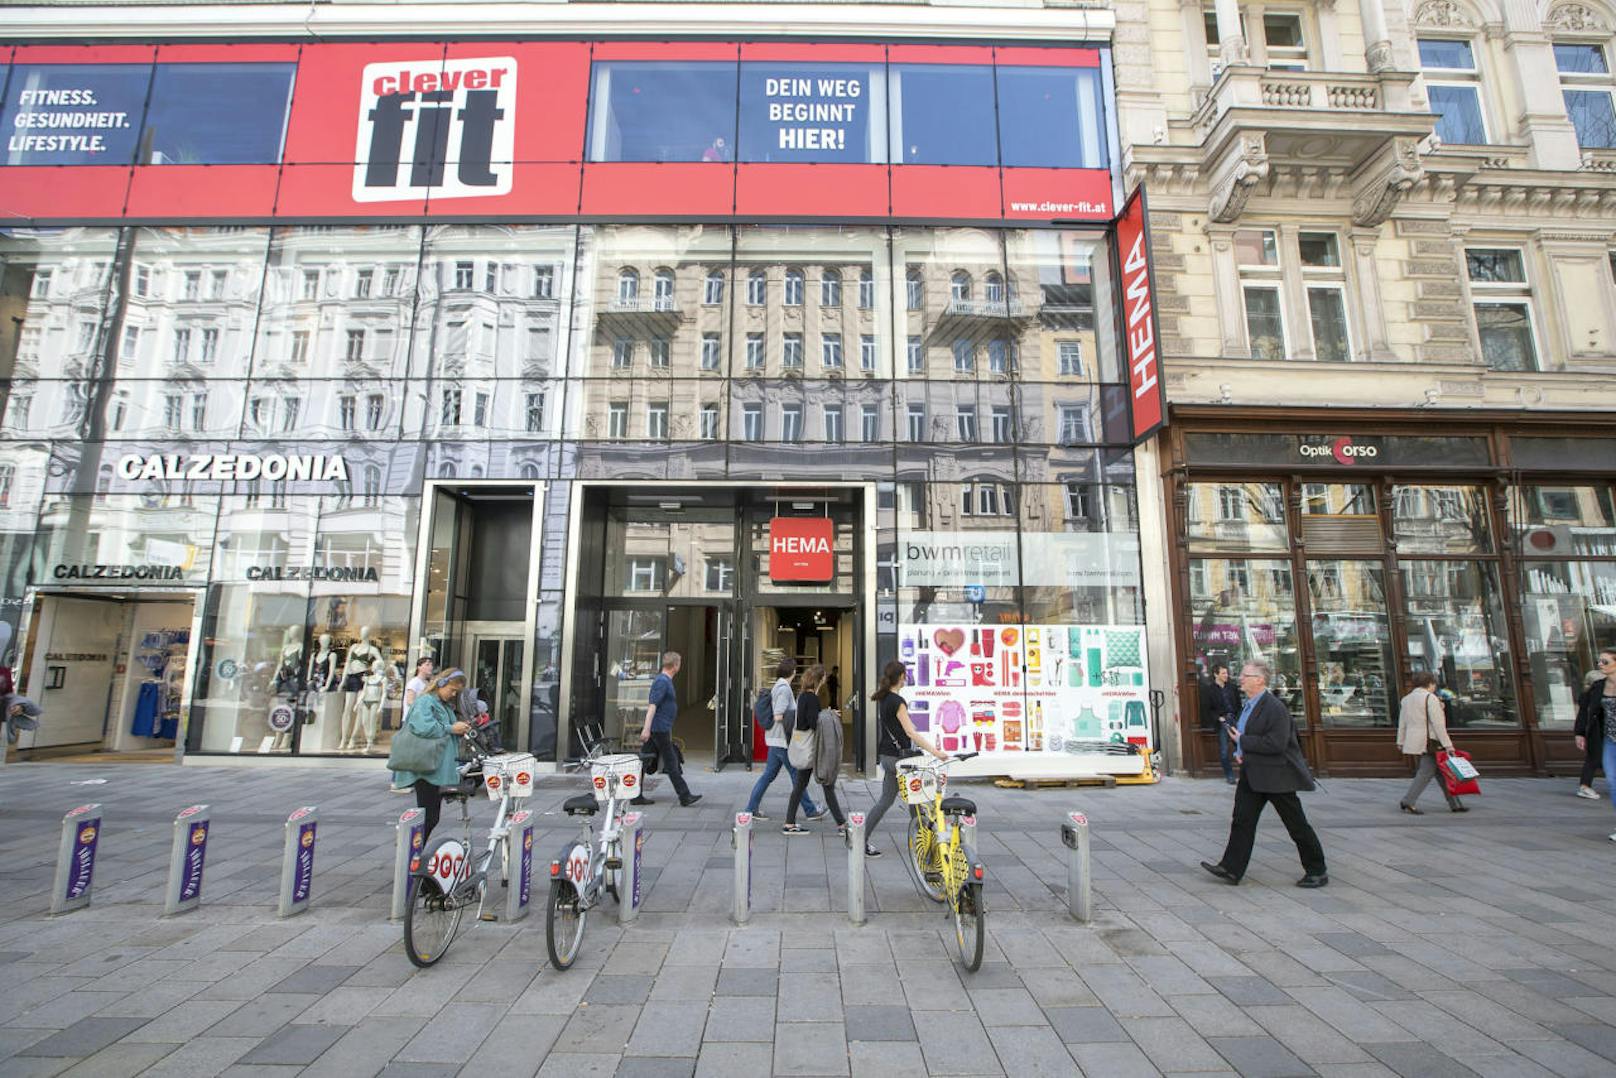 Die niederländische Kette eröffnet Ende April auf der Mariahilfer Straße seinen österreichischen Flagship-Store. Schon am Freitag öffnet eine kleinere Ausgabe am Westbahnhof.